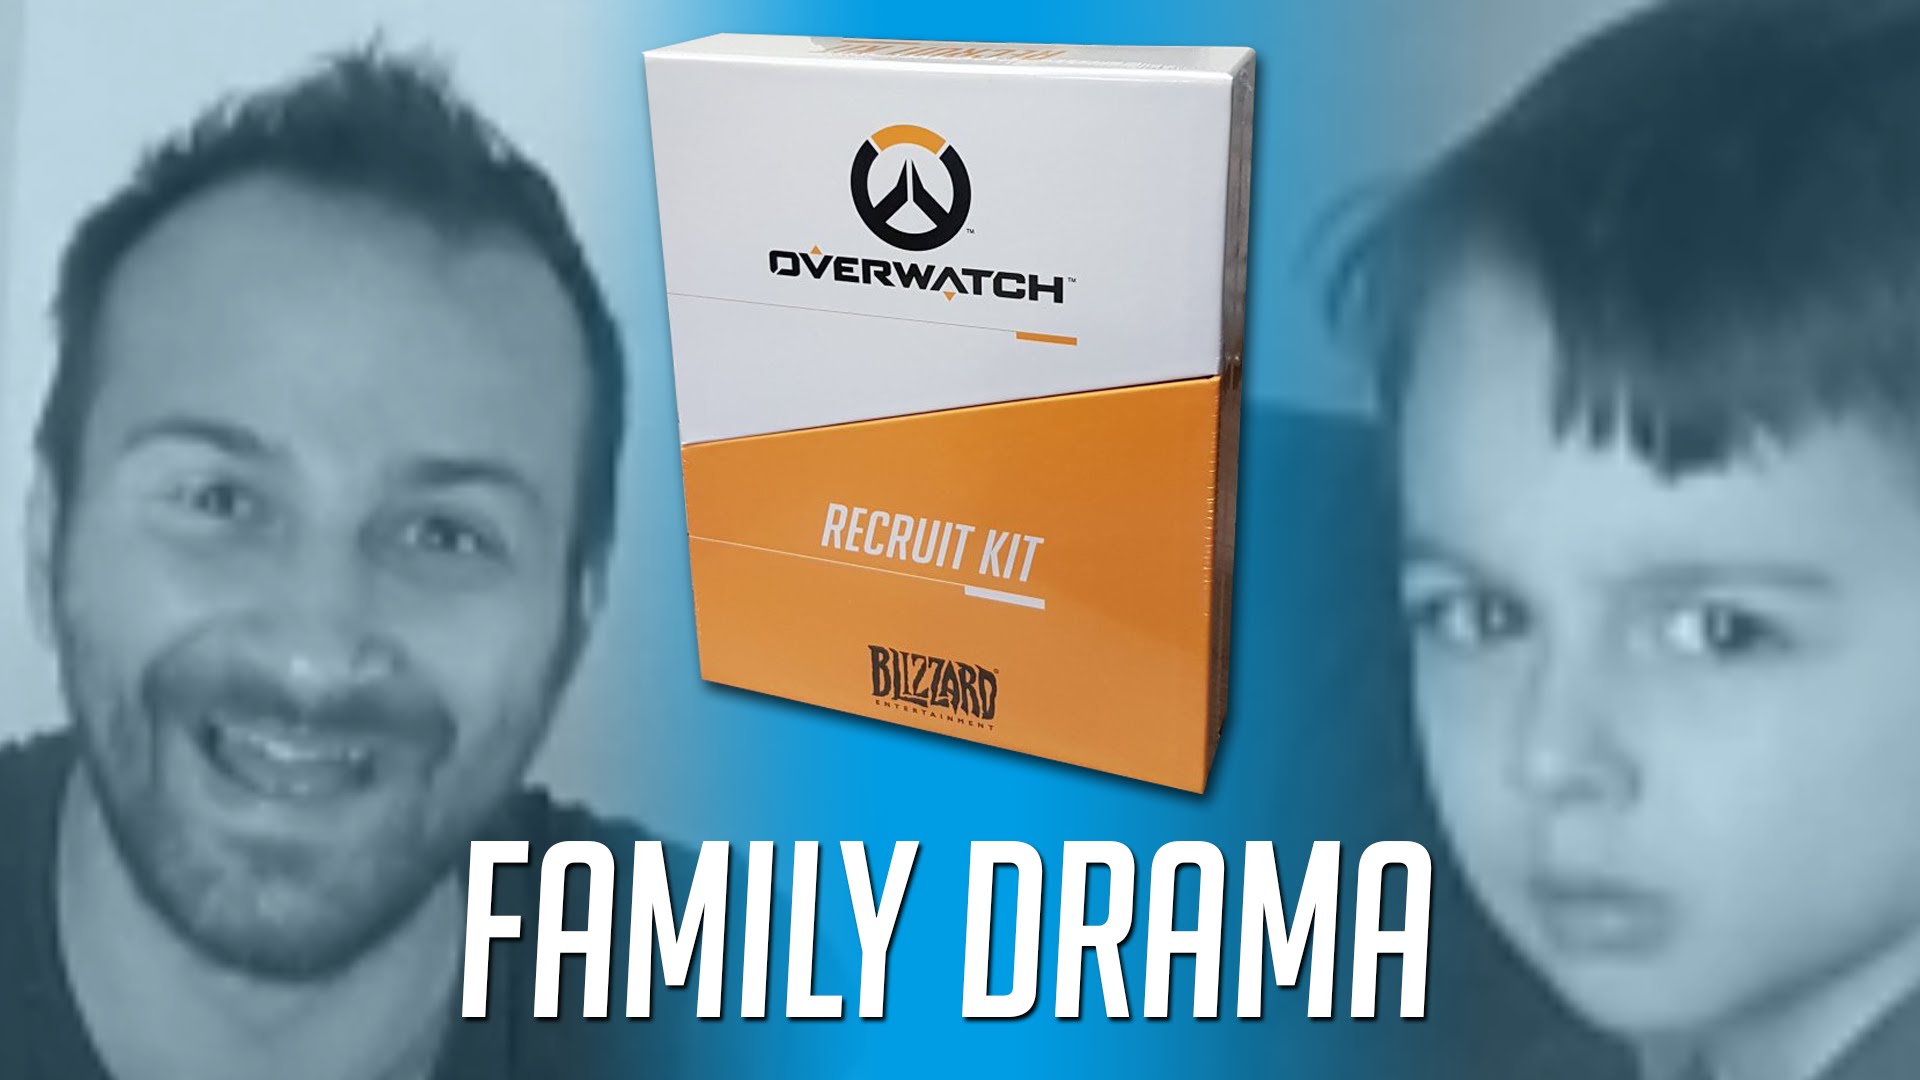 H82 Overwatch apre il Recruit Kit – Dramah e Delirio in Famiglia!